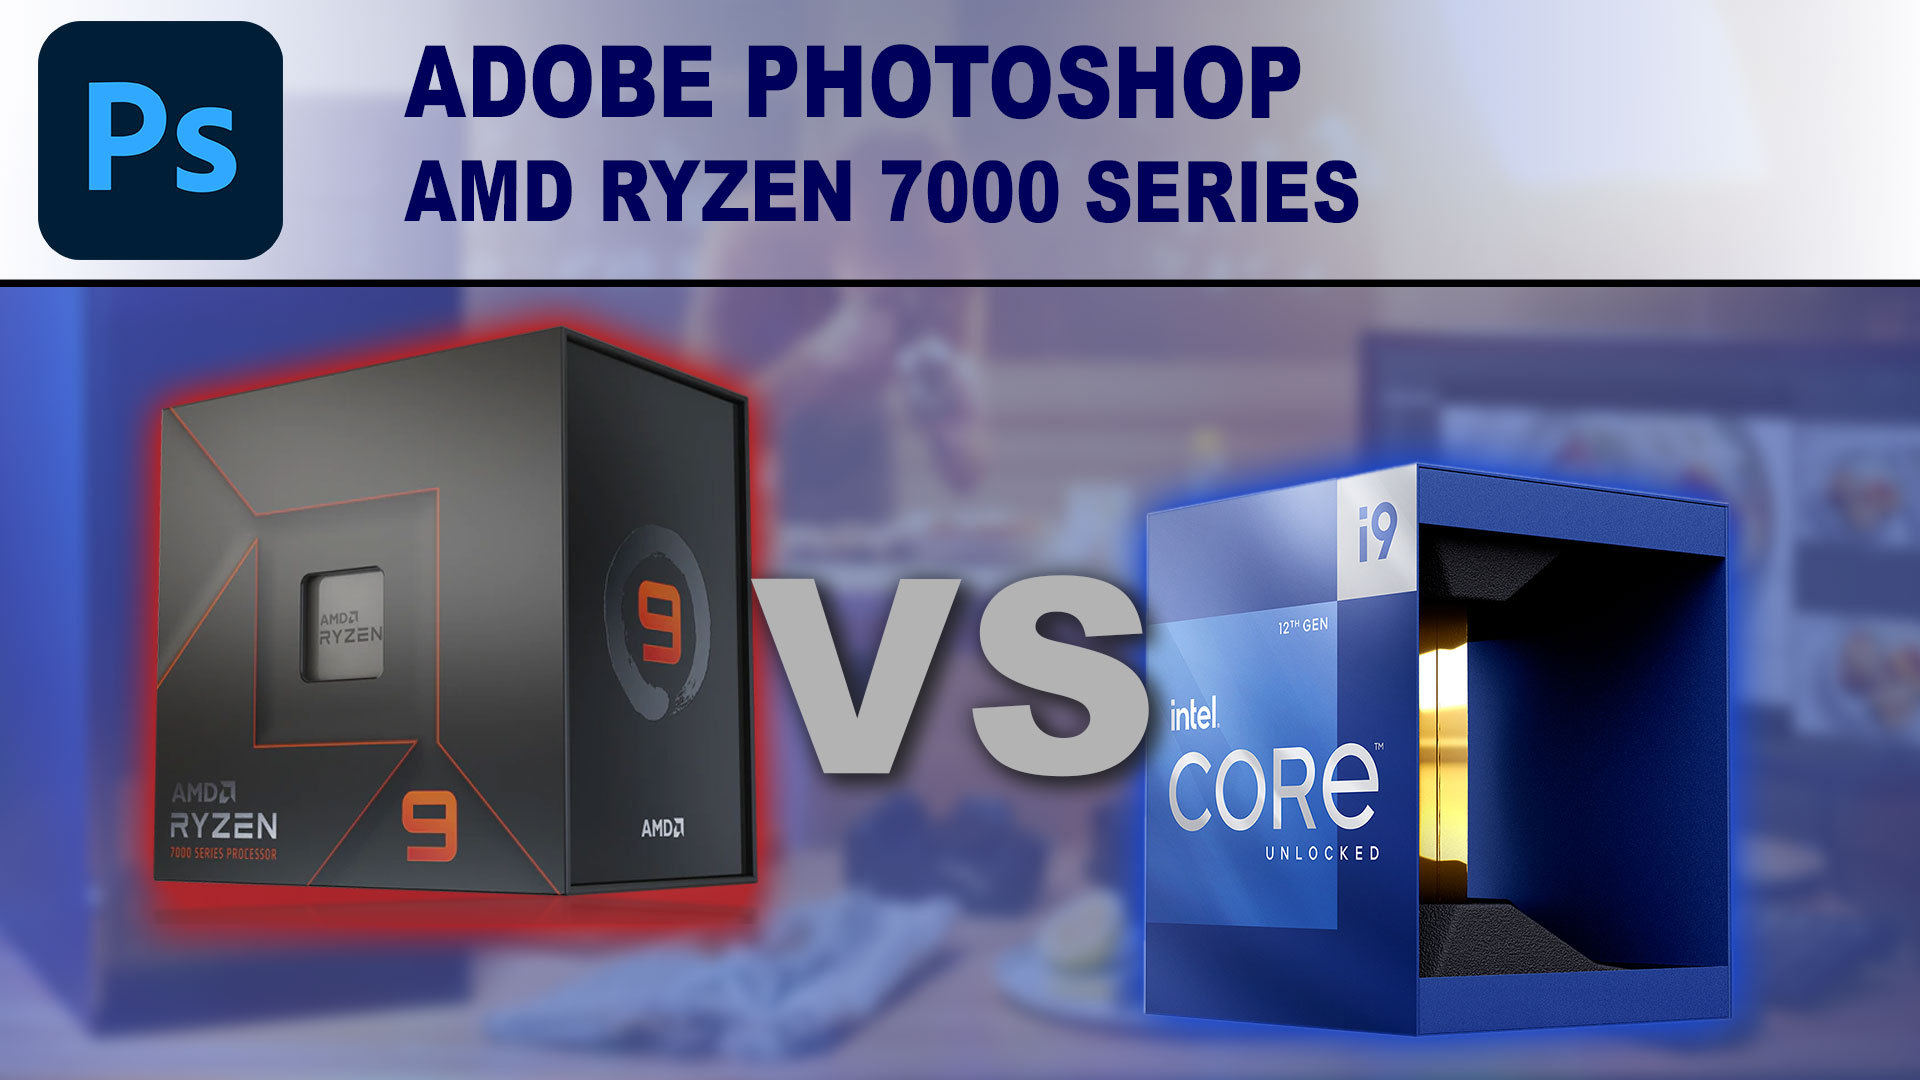 Adobe Photoshop: AMD Ryzen 7000 Series vs Intel Core 12th Gen